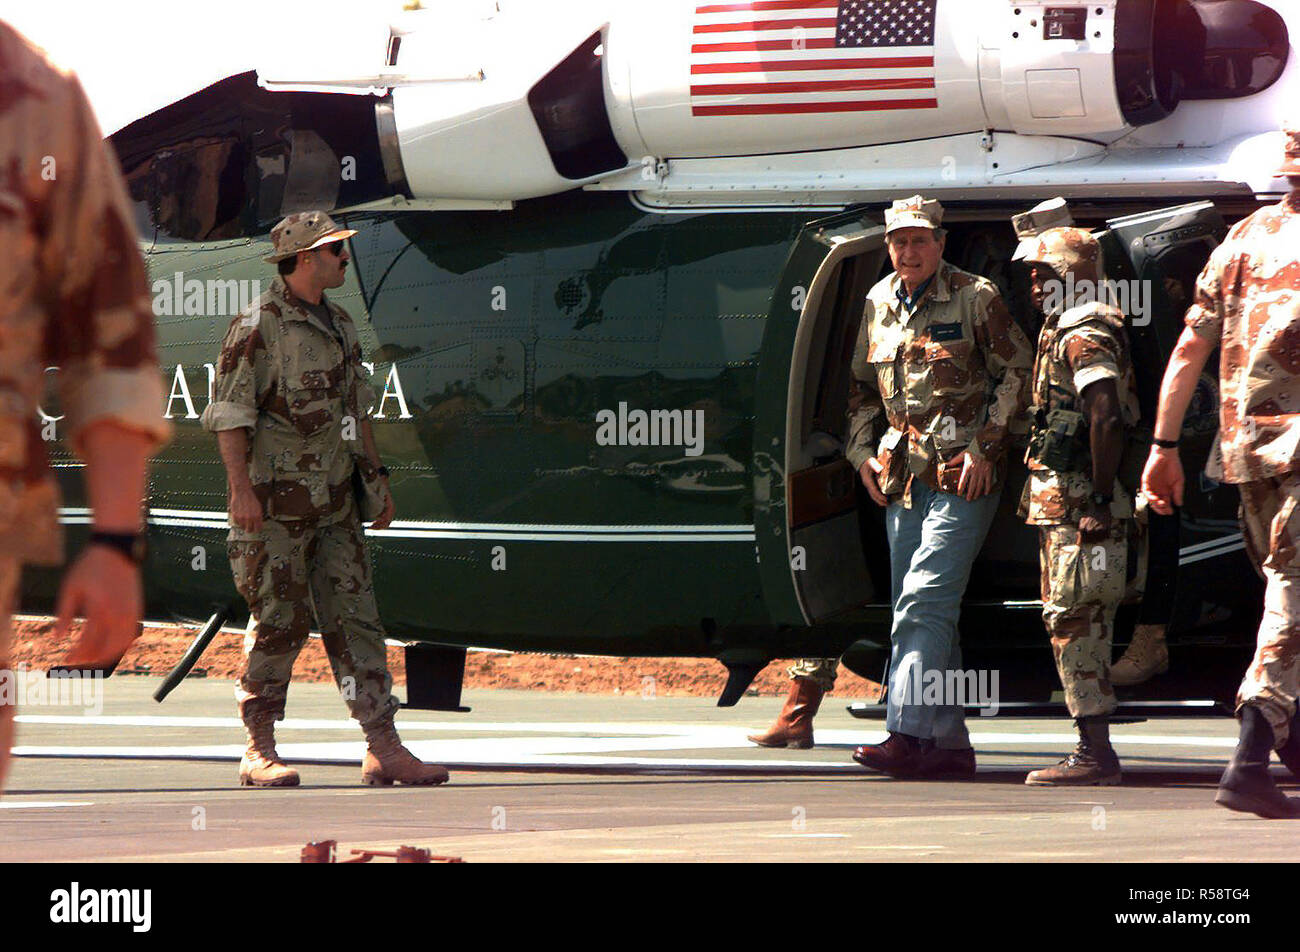 1992 - El presidente George Bush llega al recinto de la embajada americana en un helicóptero UH-60 Blackhawk. Foto de stock